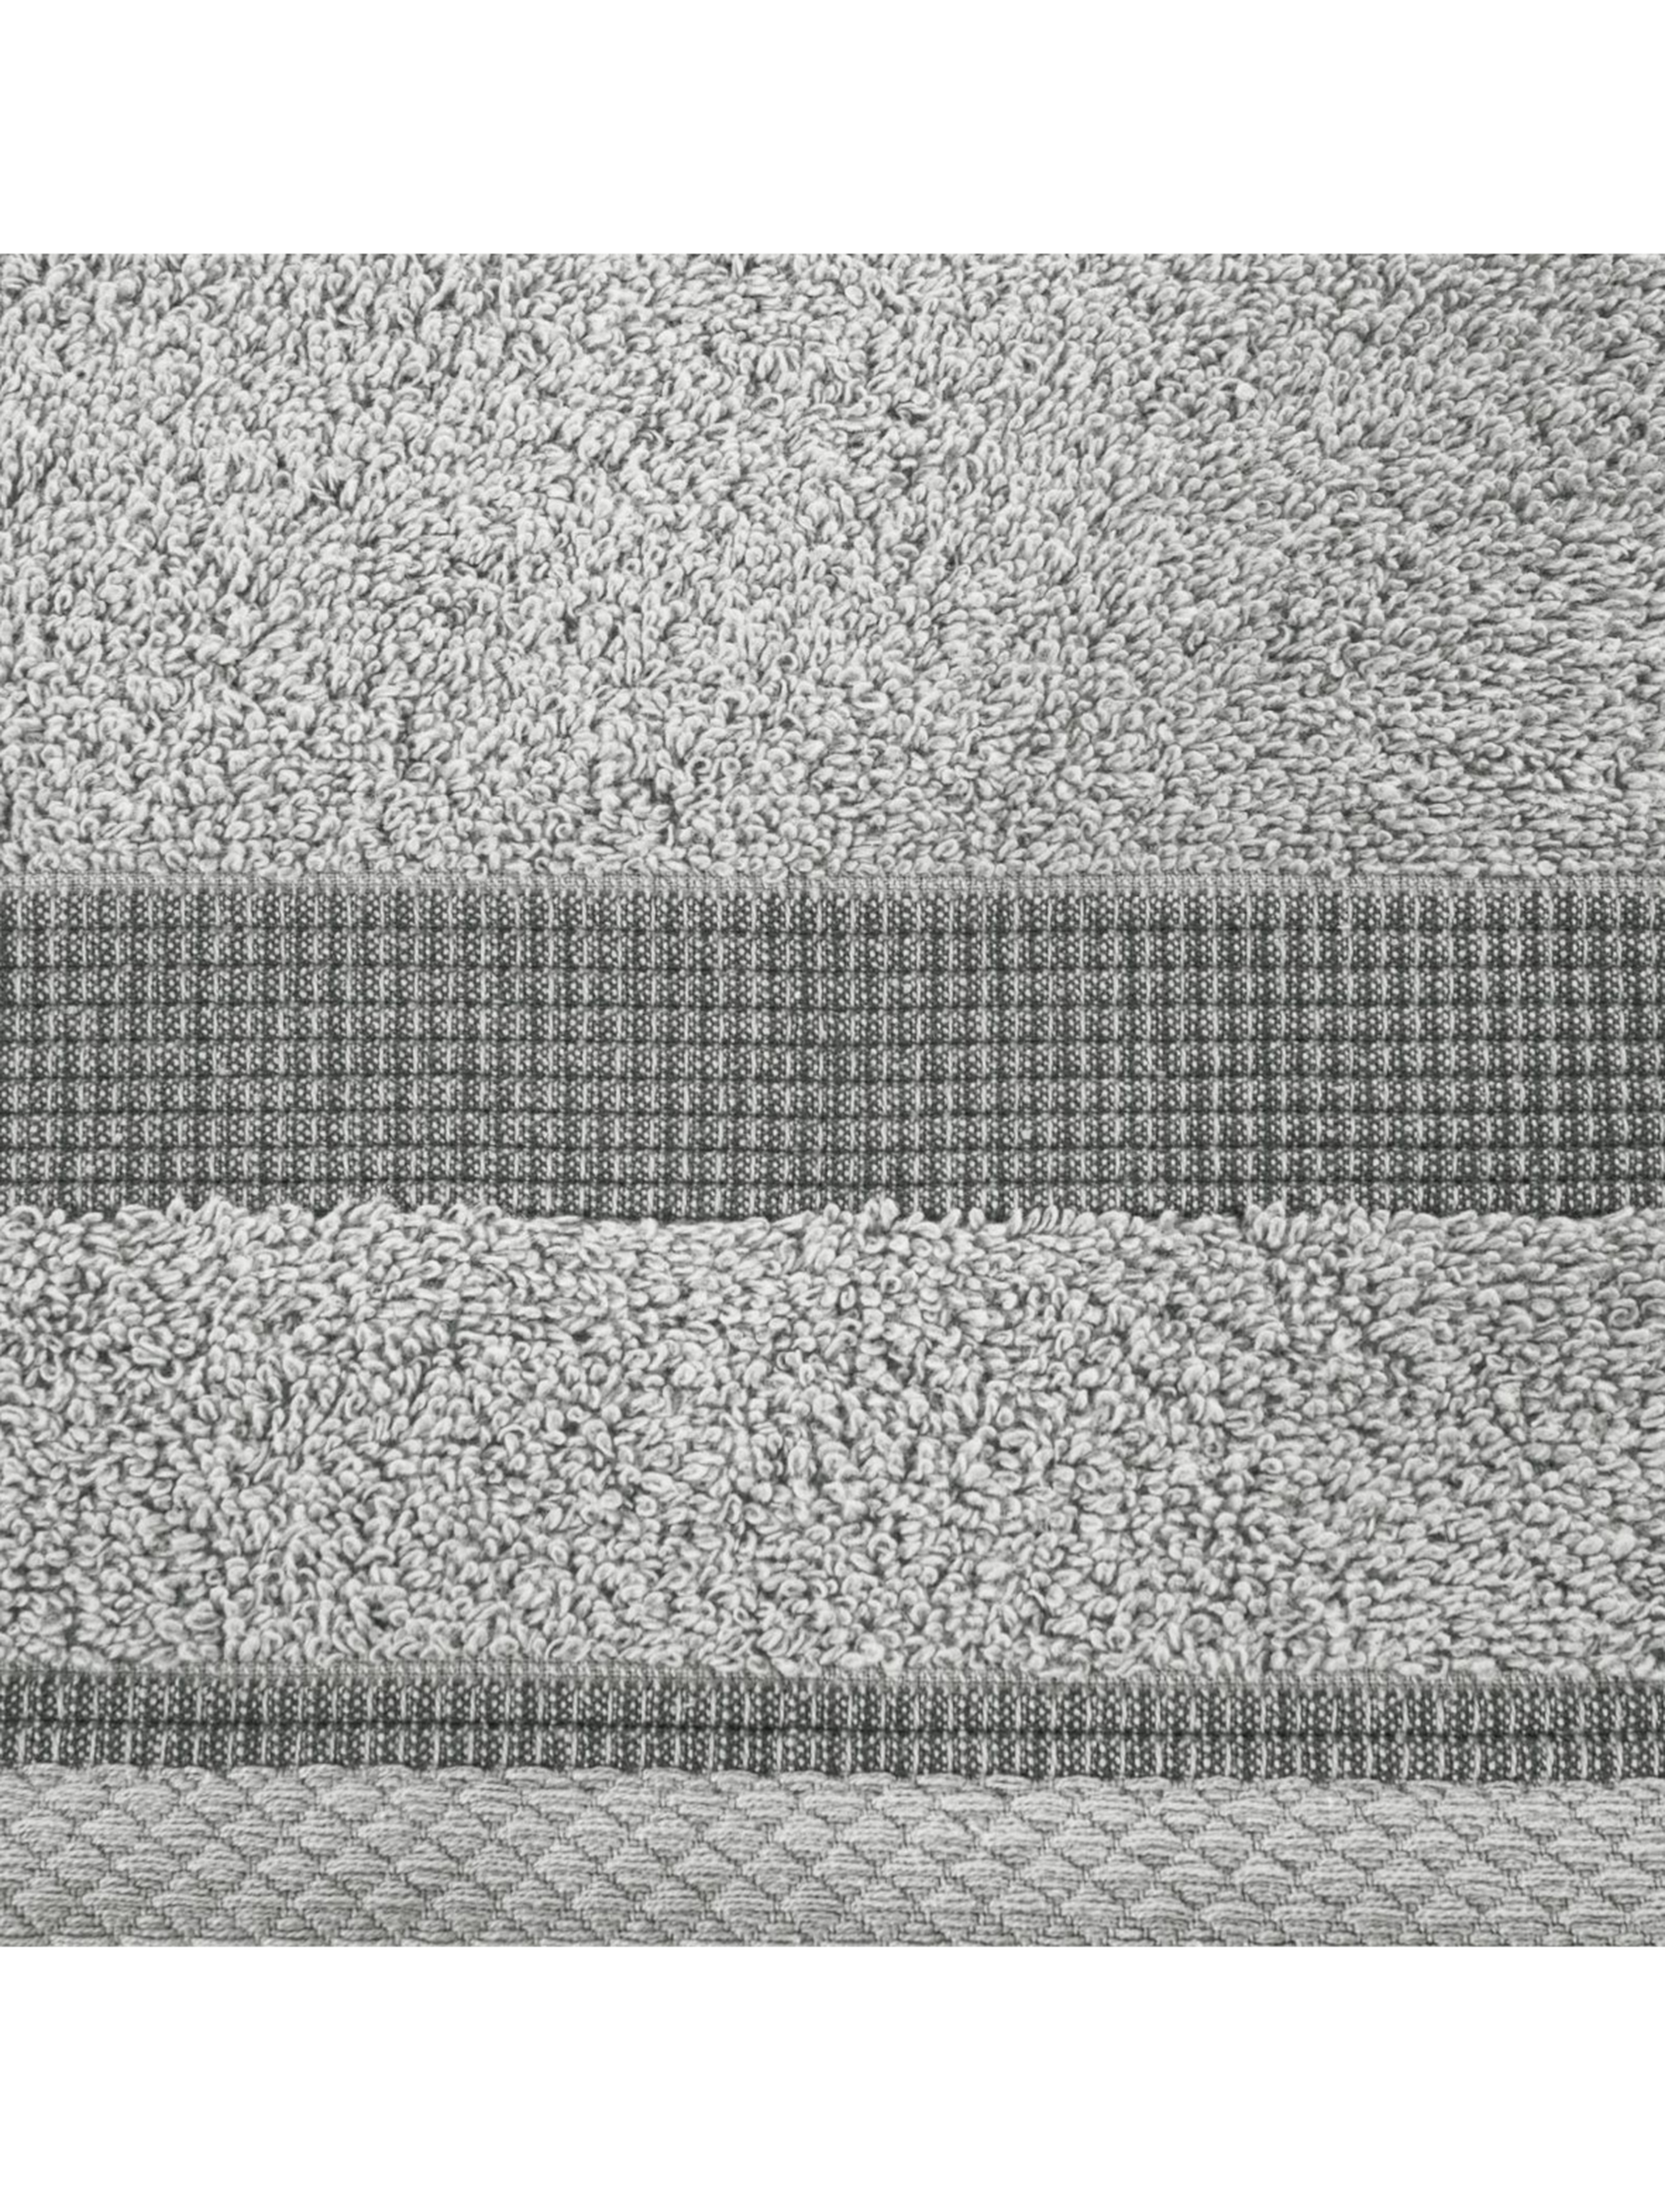 Ręcznik rodos (03) 50 x 90 cm szary